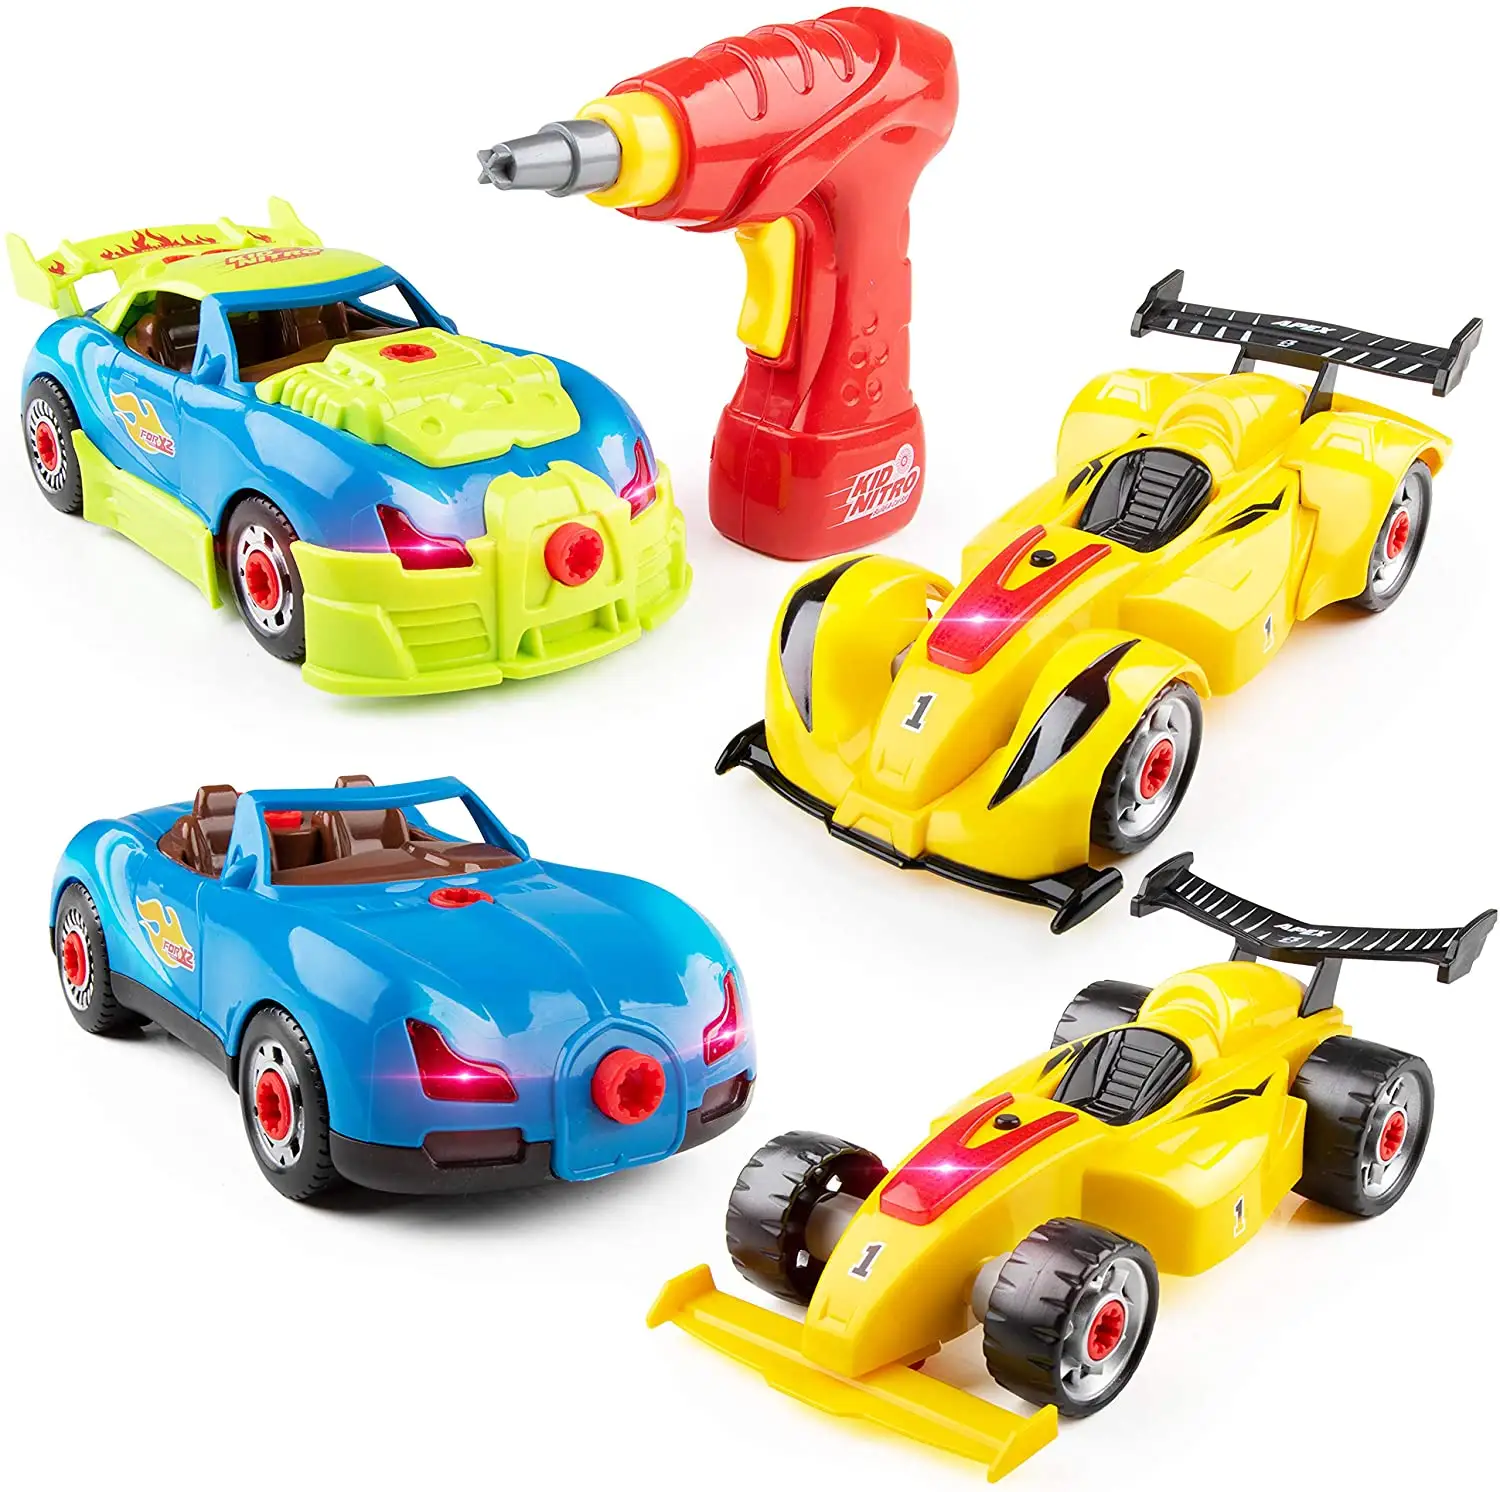 Bongkar Mainan Mobil Balap Bangun Mobil Mainan Anda Sendiri, dengan 30 Buah Set Mainan Konstruksi Mobil Bangunan dengan Suara Mesin & Lampu